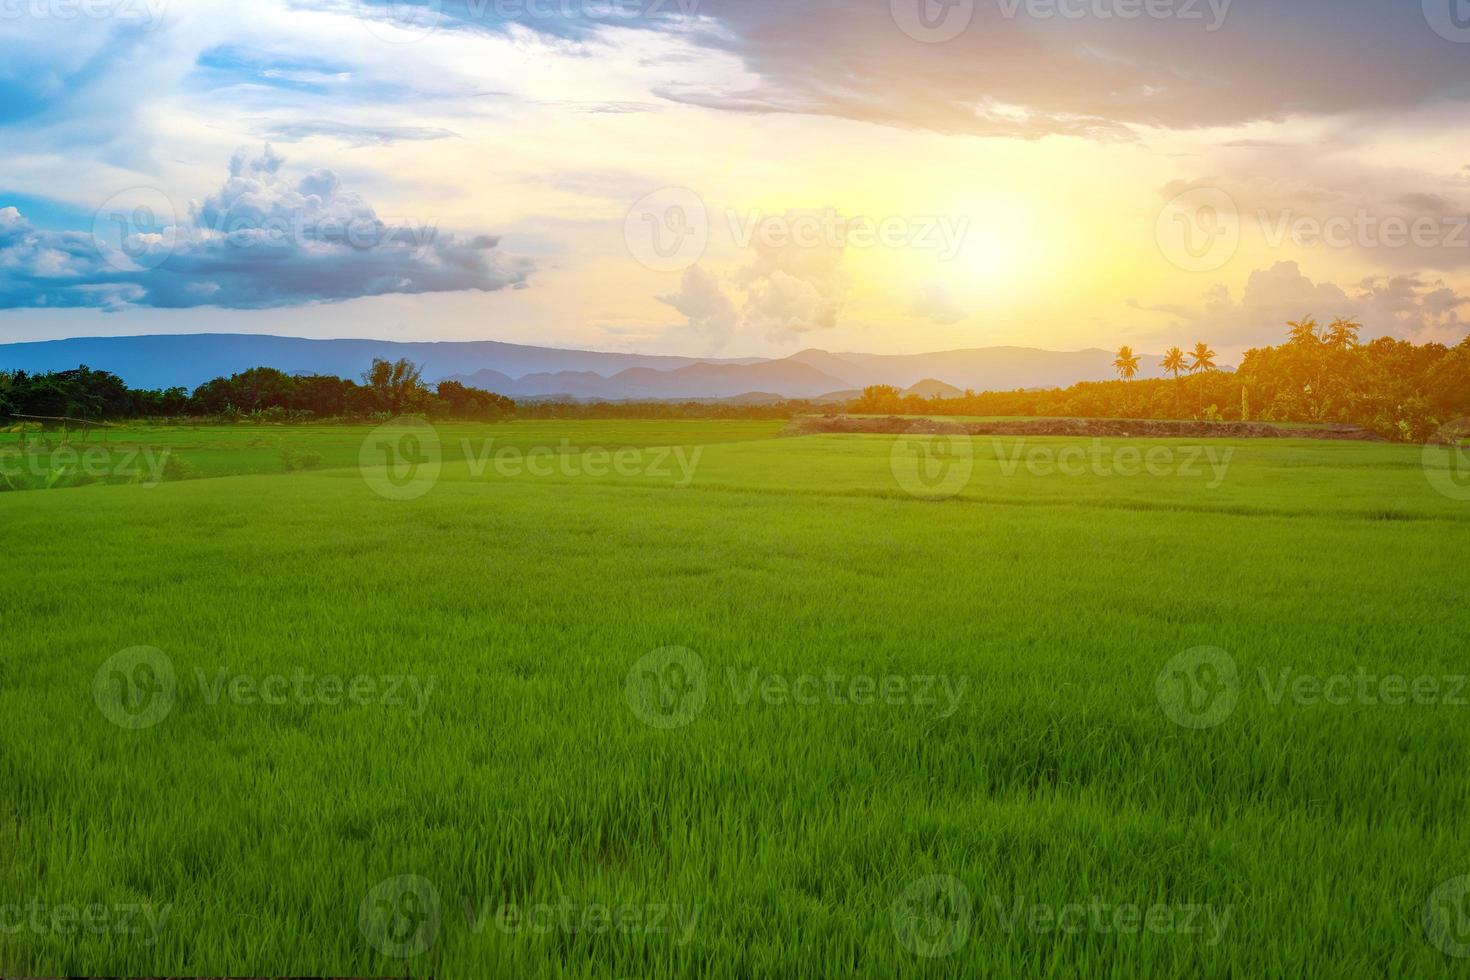 groene rijstzaailingen in een rijstveld met prachtige lucht en wolken, de ondergaande zon boven een bergketen op de achtergrond foto